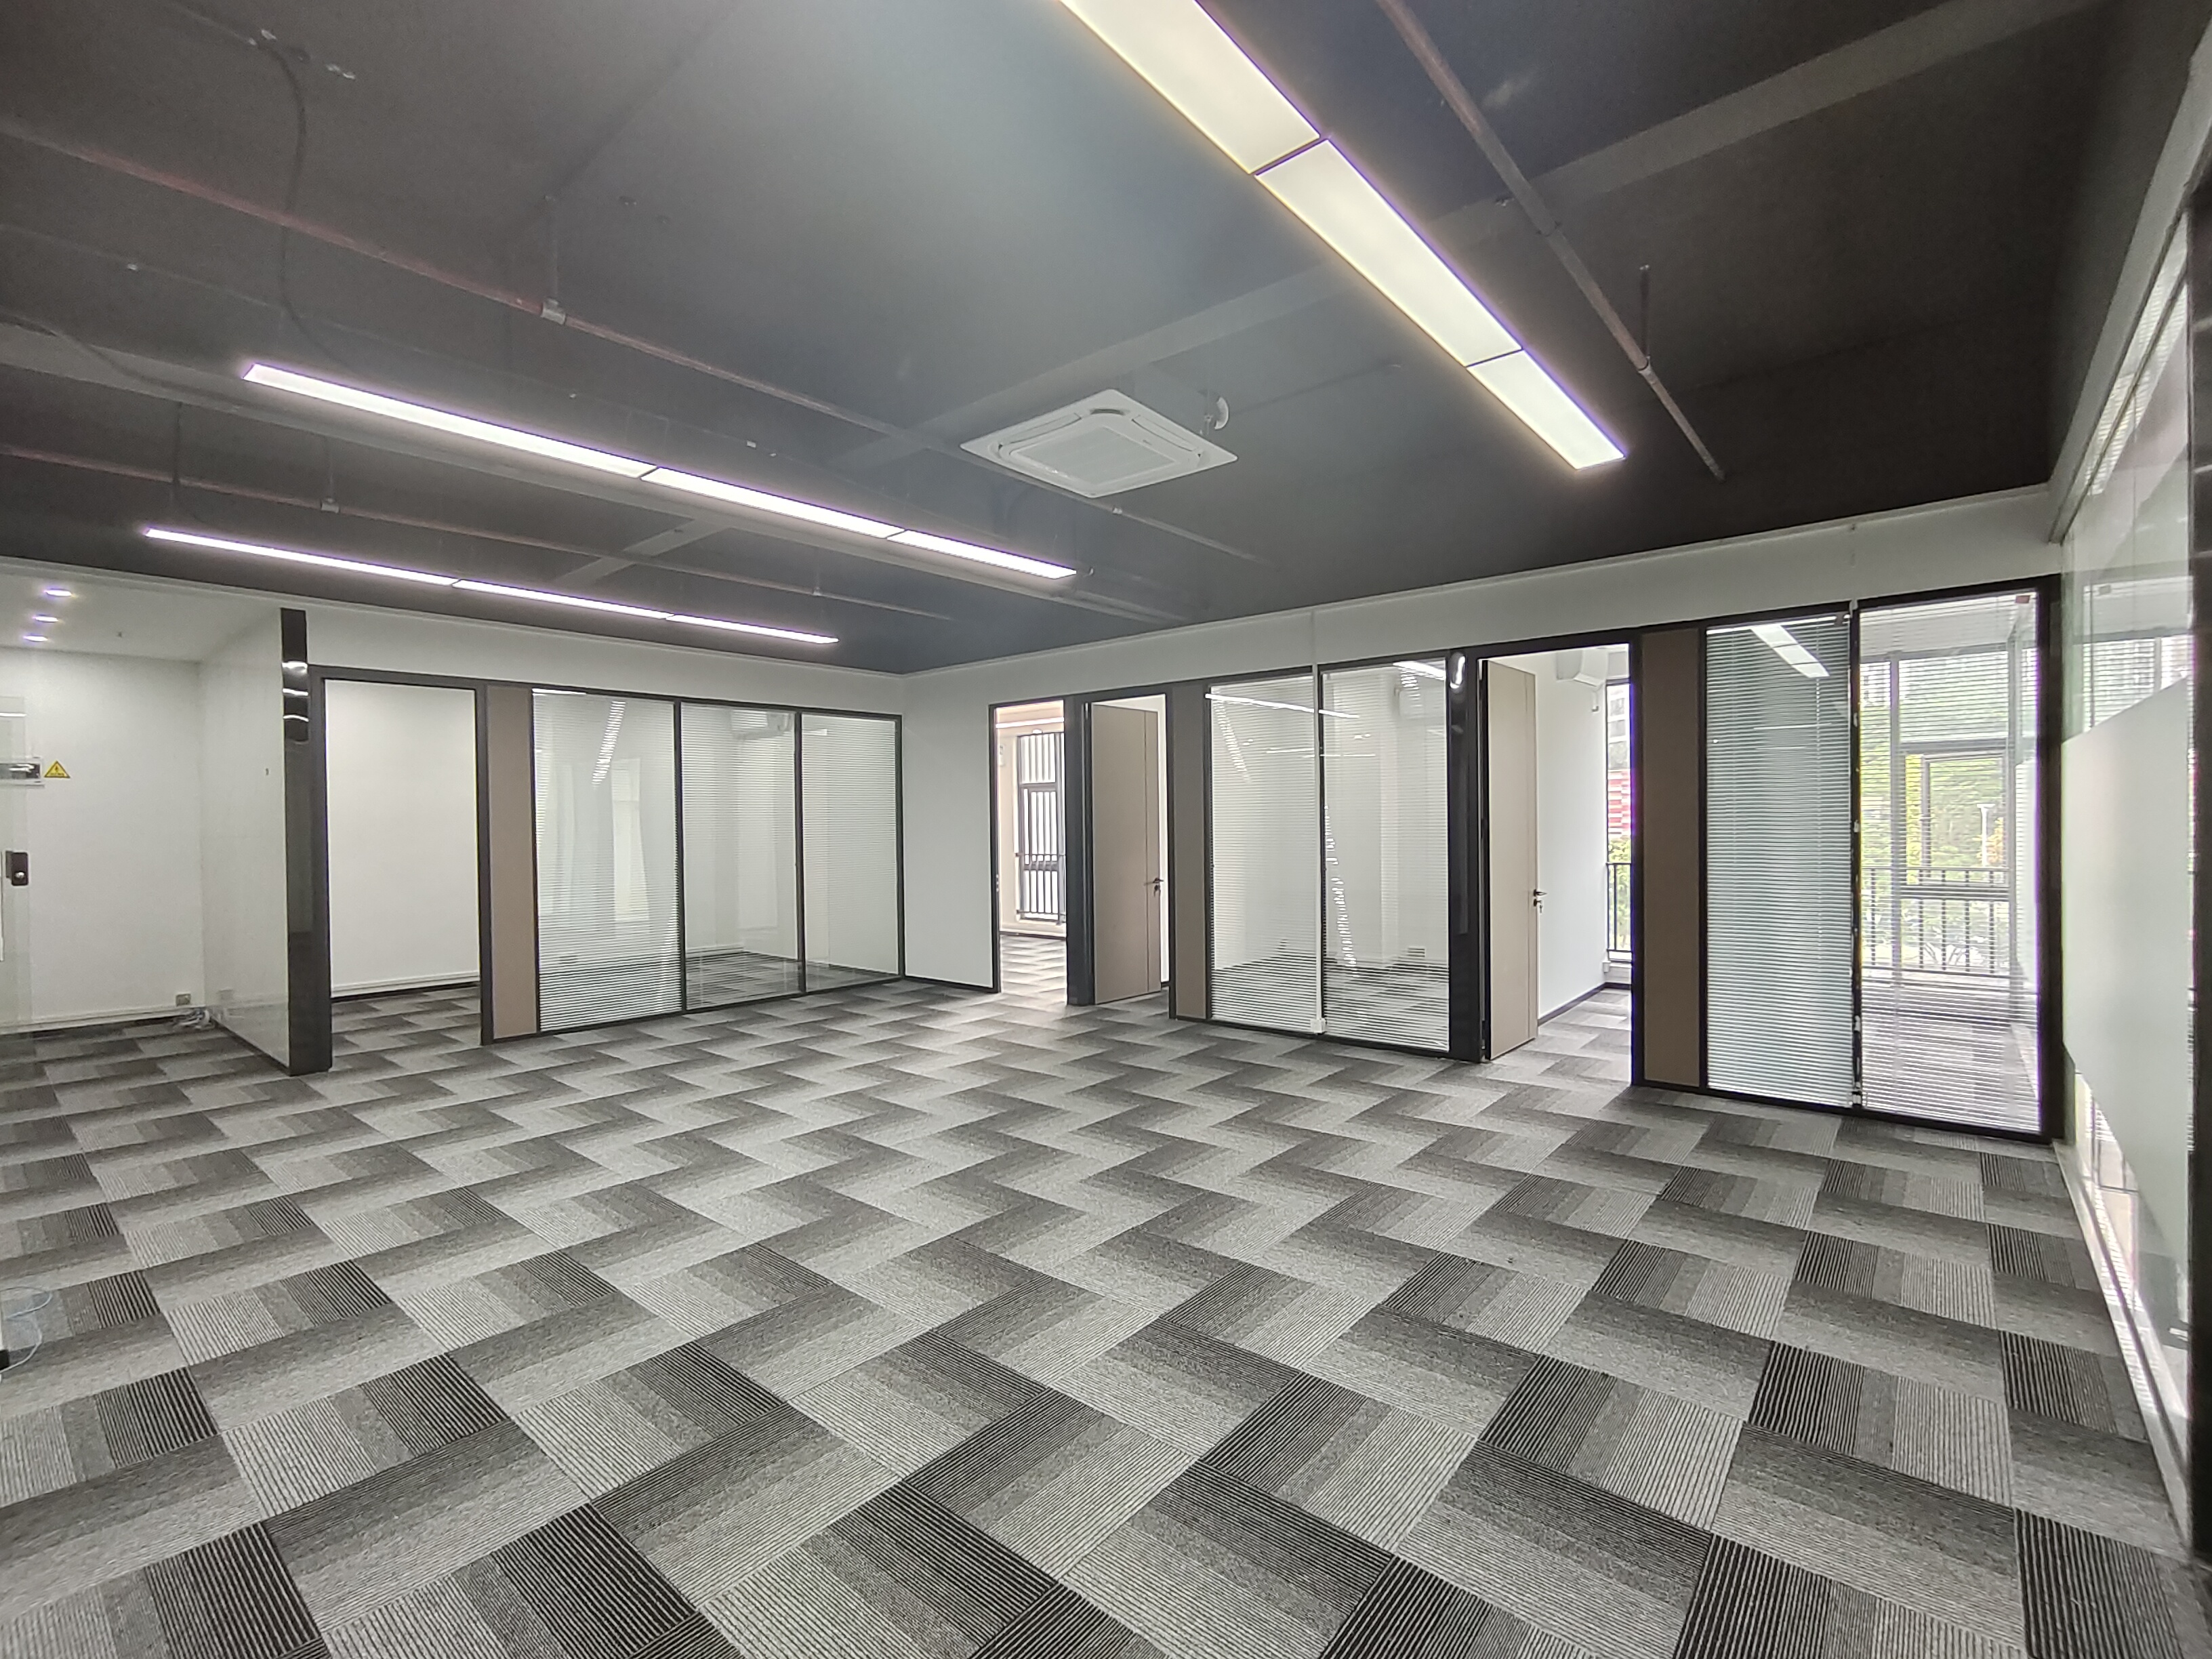 光雅园地铁口200平至500平精装修办公室使用率高